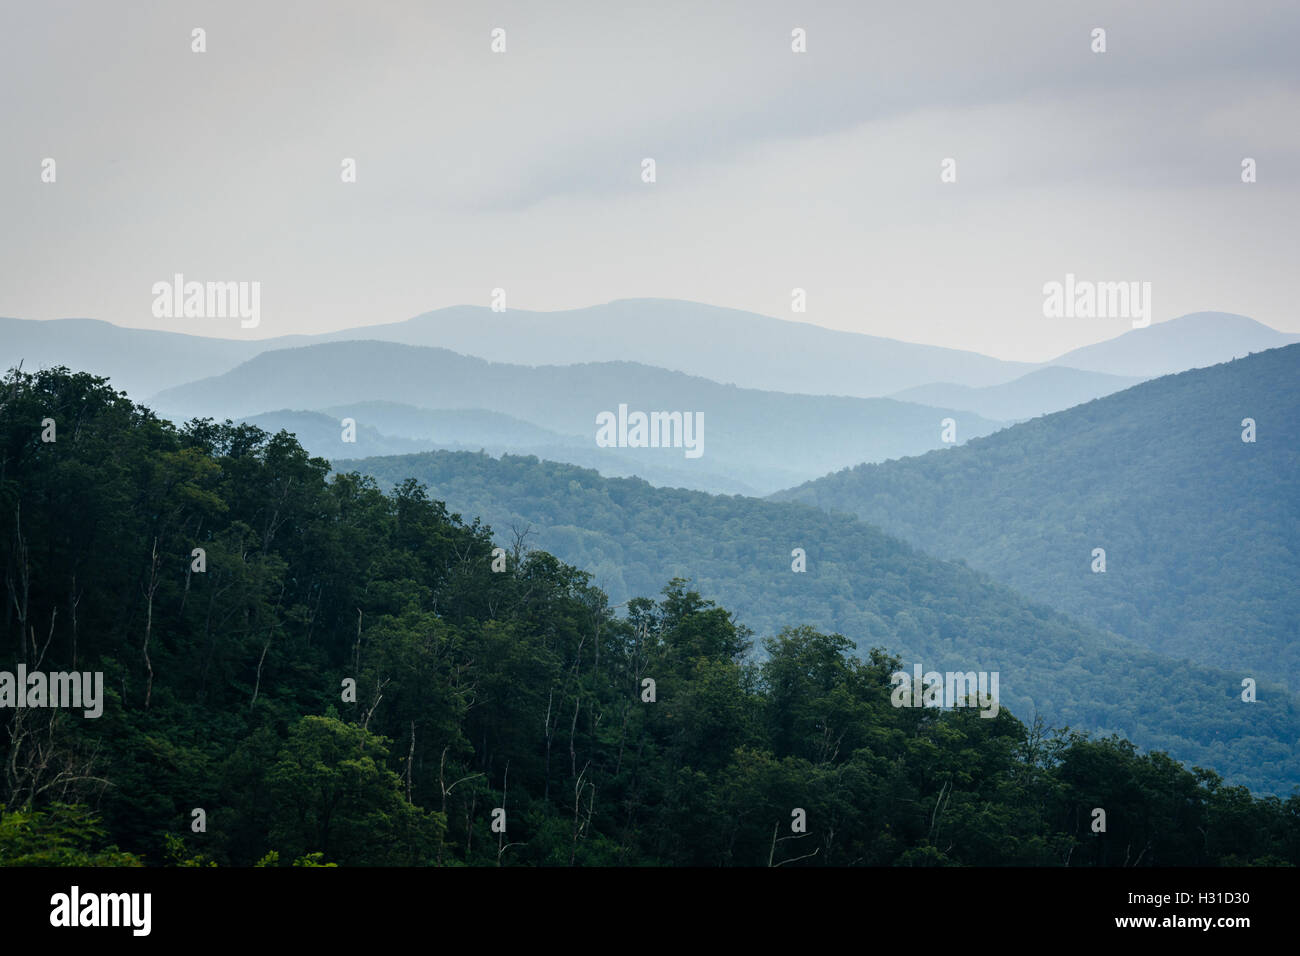 Capas de la Blue Ridge, visto en el Parque Nacional Shenandoah, Virginia. Foto de stock